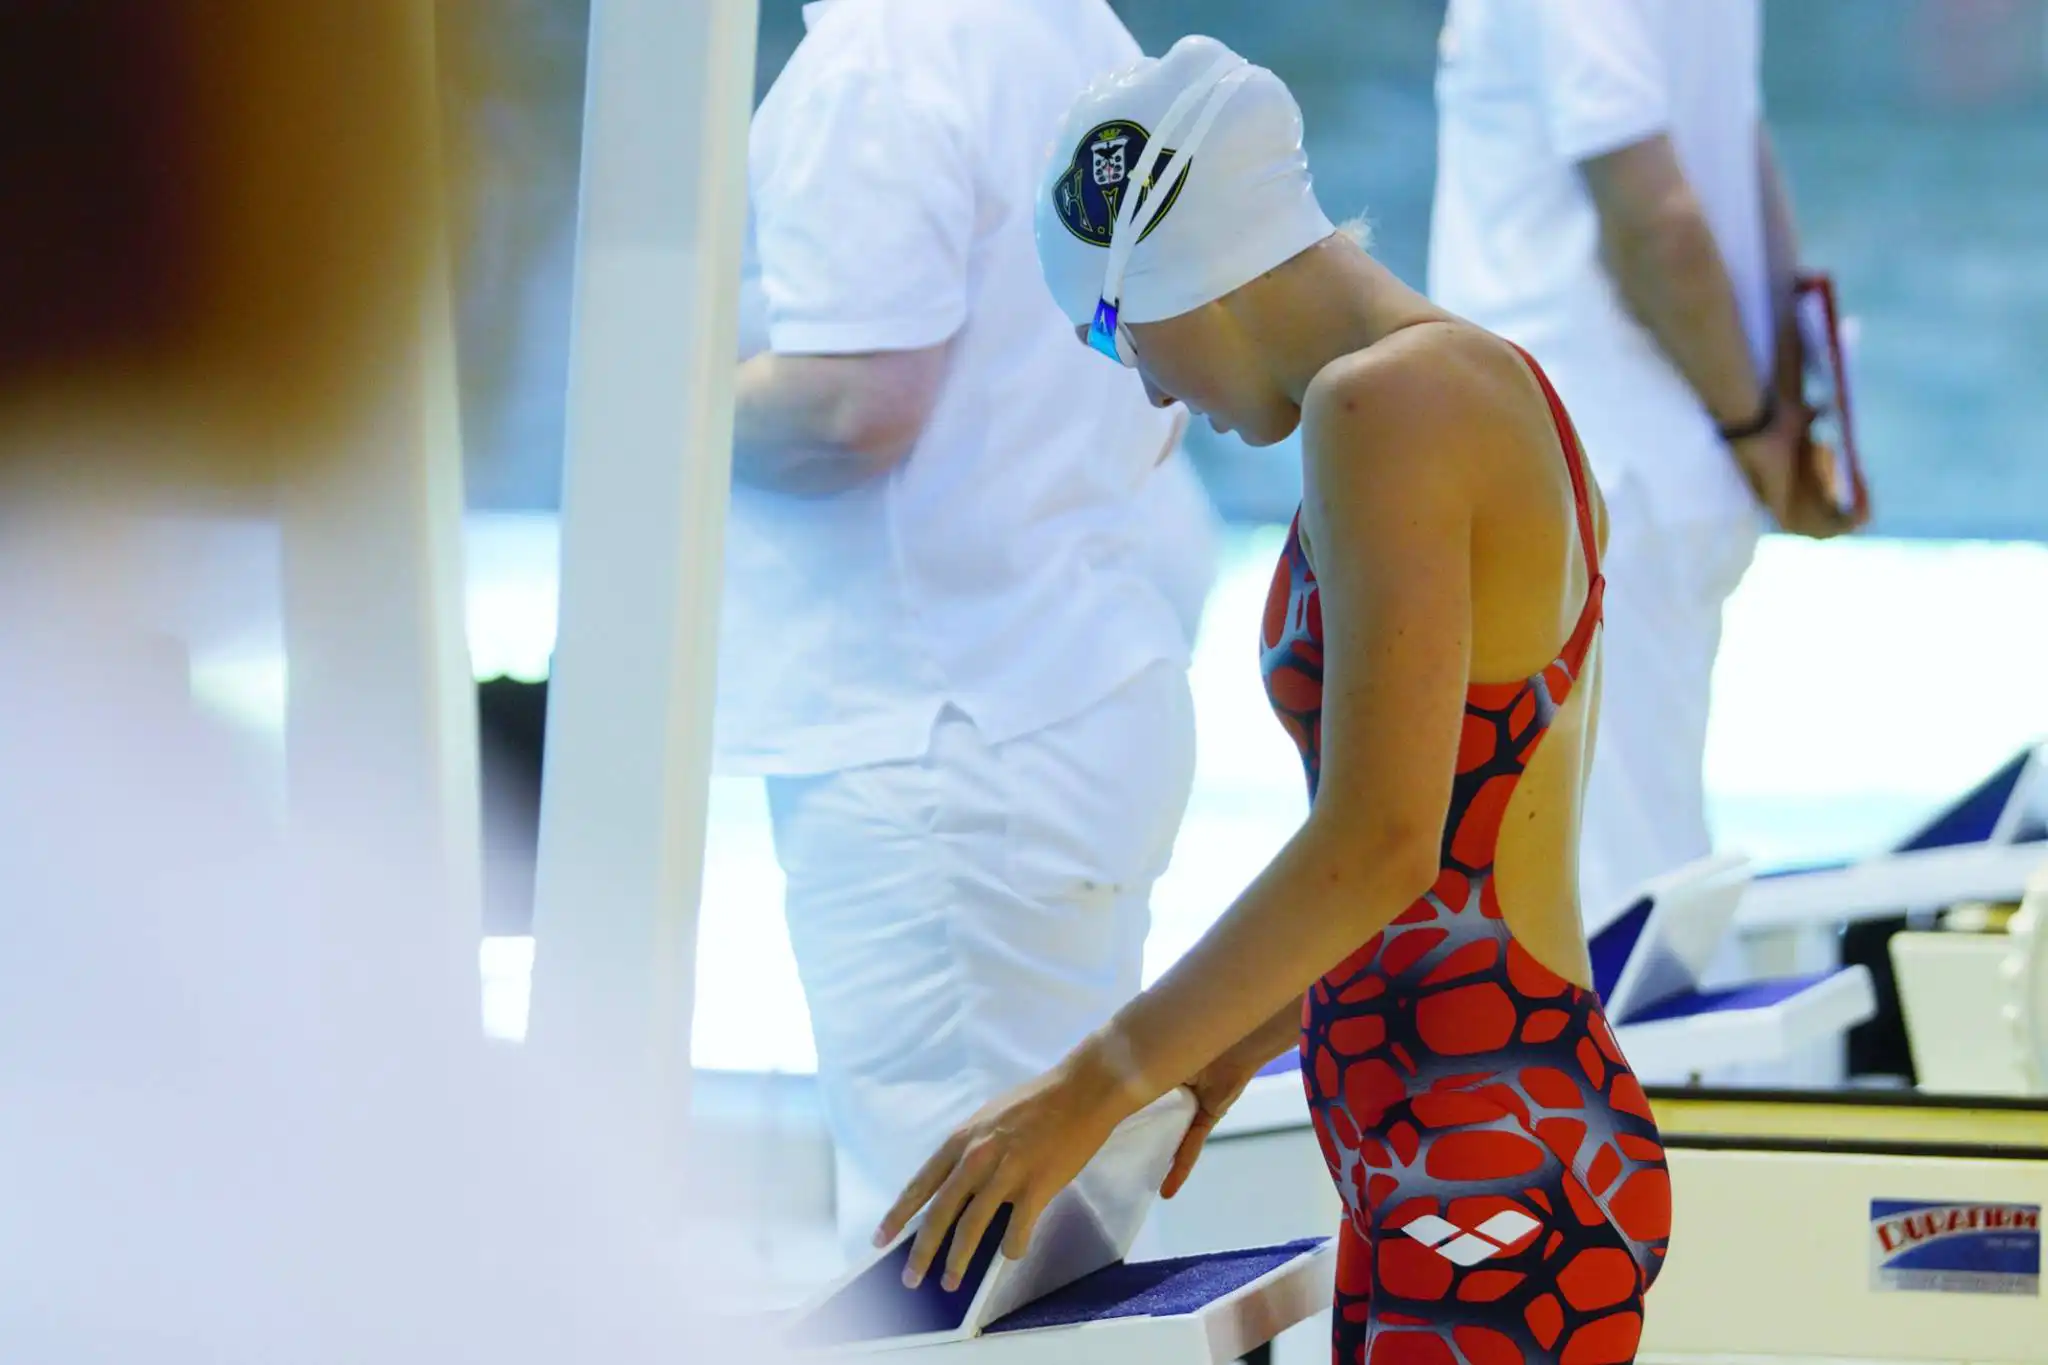 Jente som gjør seg klar til konkurransesvømming, hun står bak en startpall